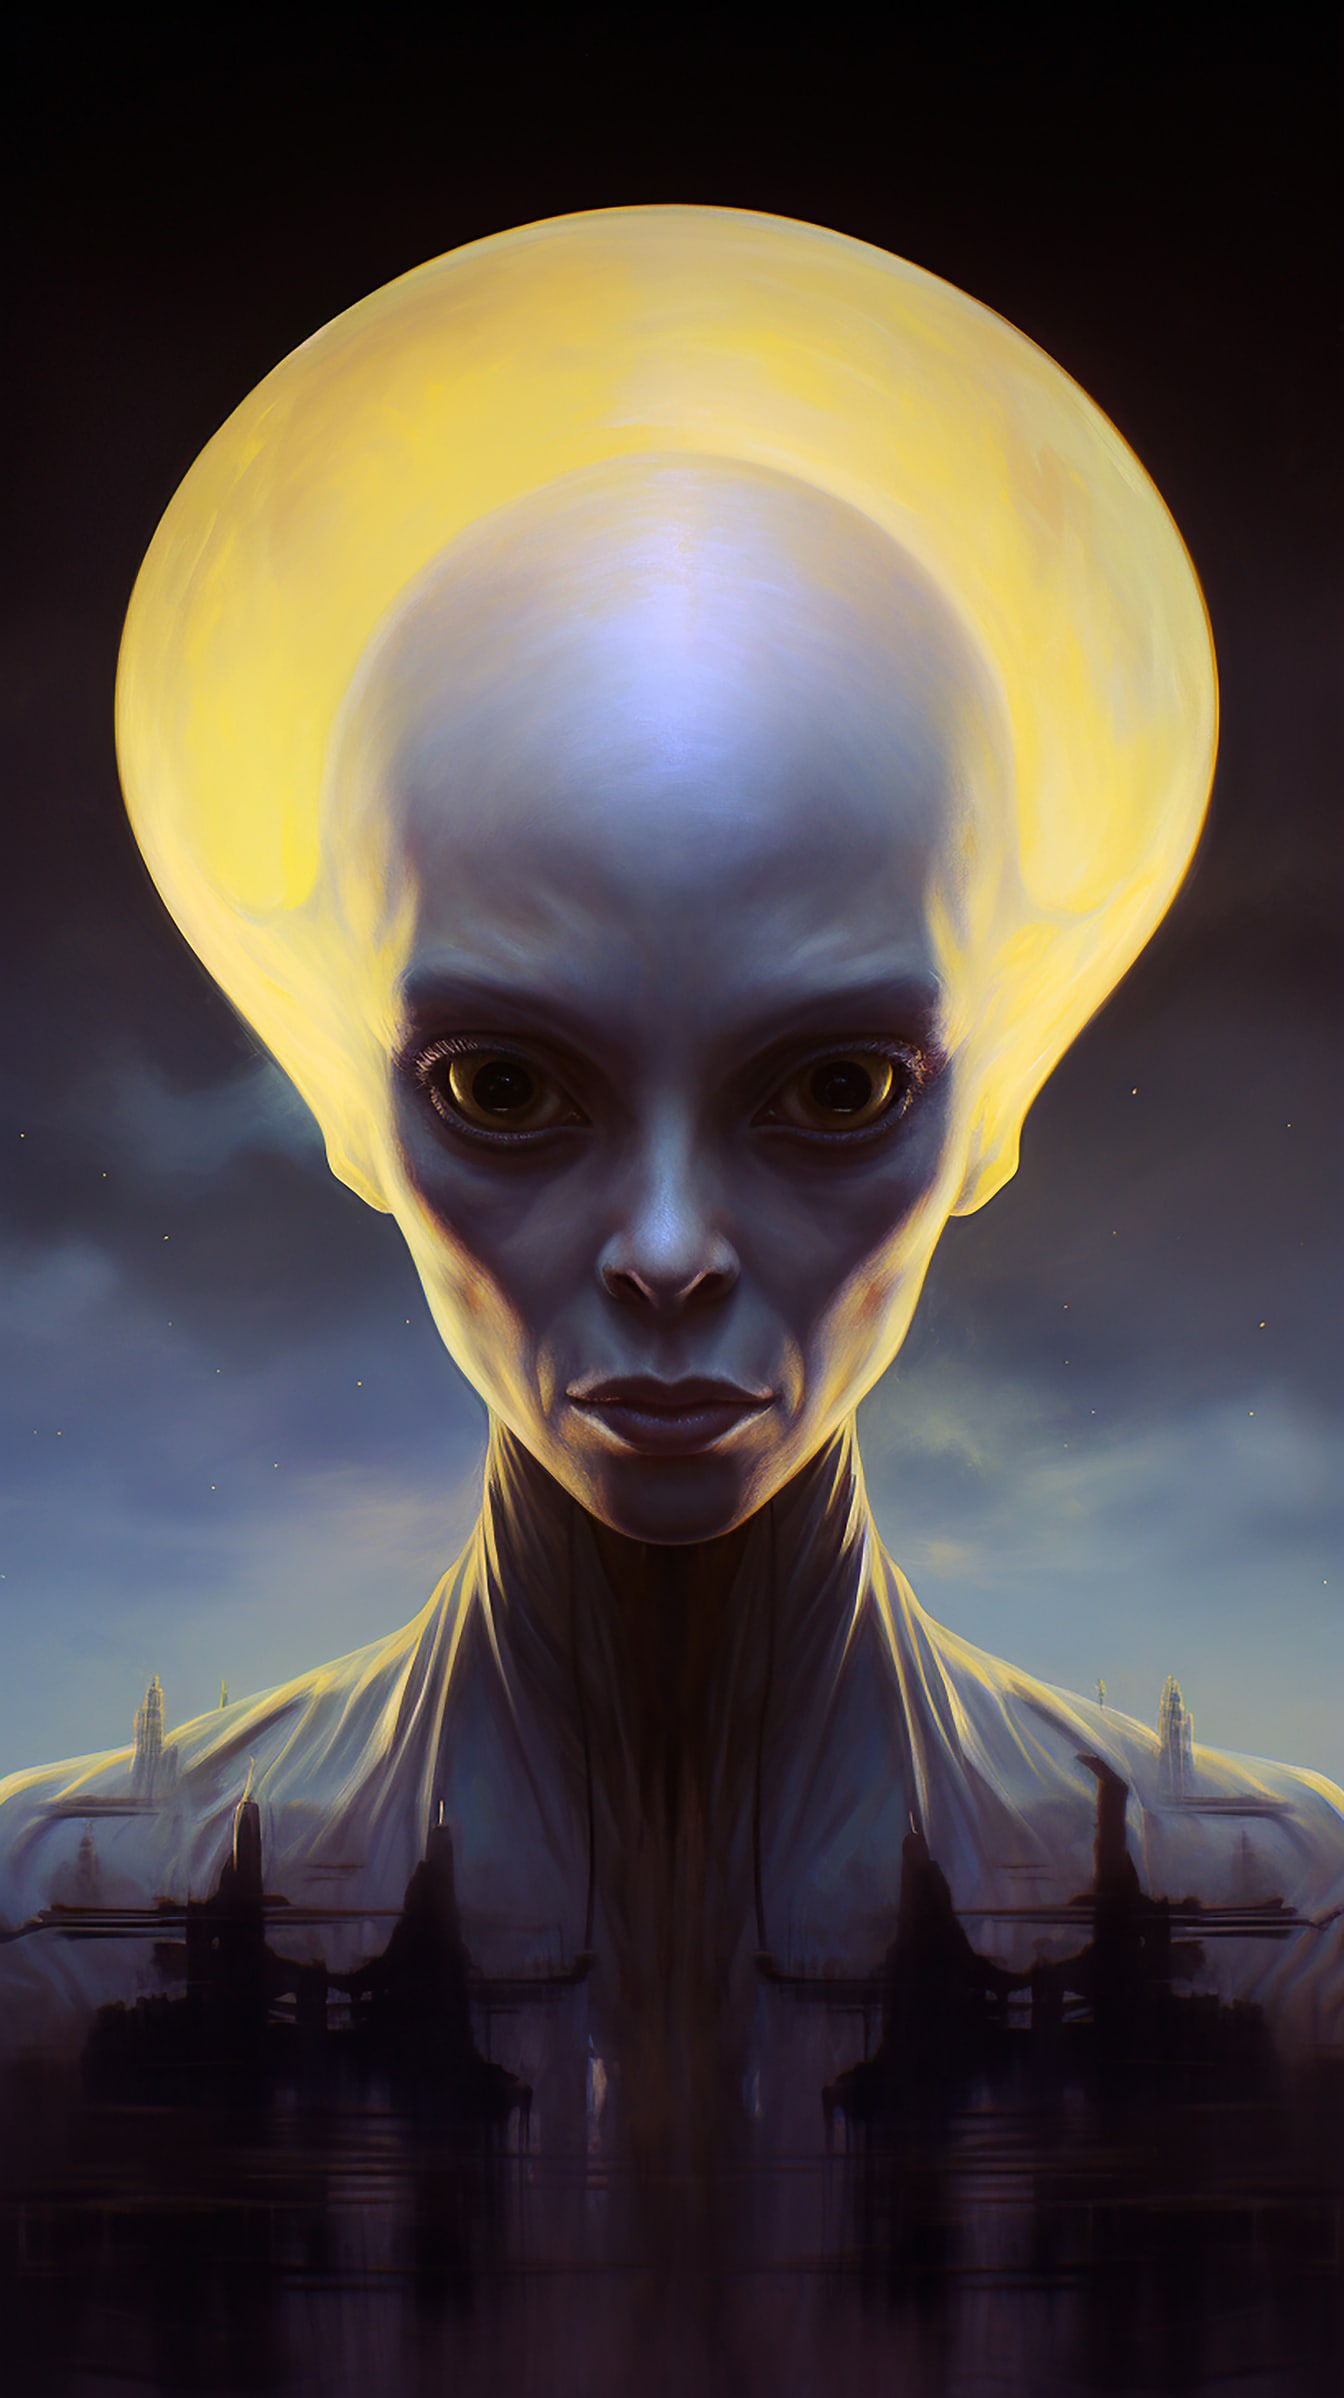 Portrét humanoidního mimozemského tvora s velkou hlavou